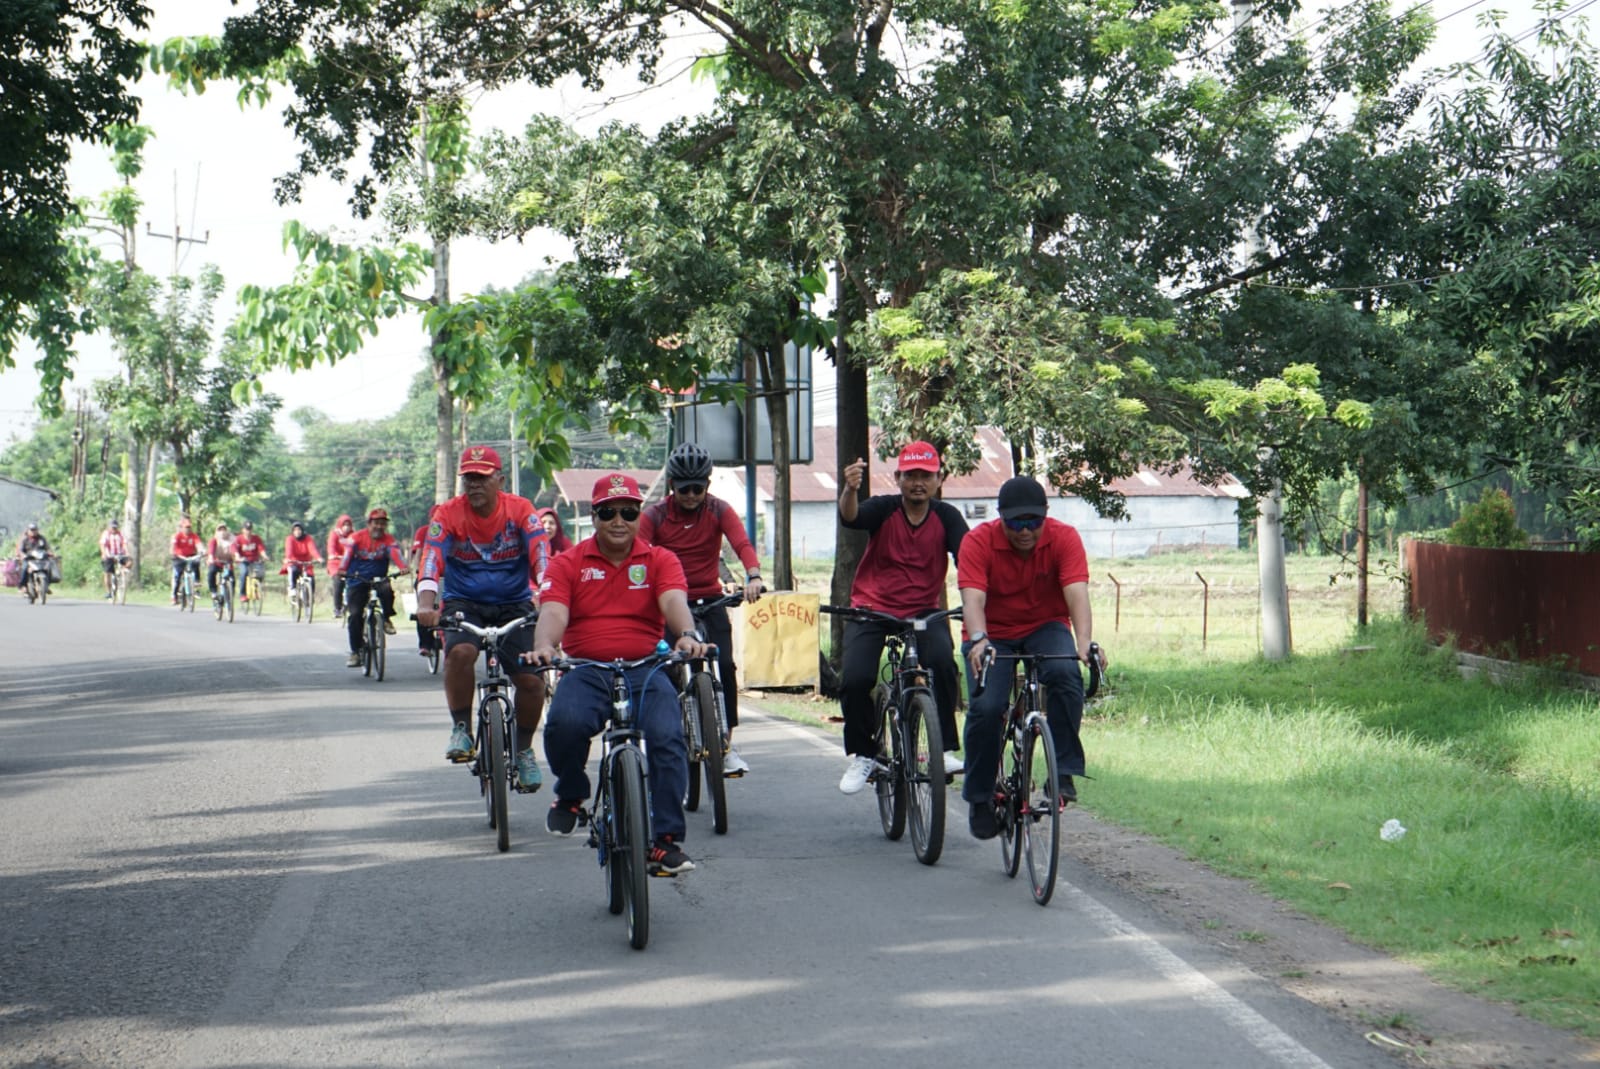 Sambut Jumat Dengan Semangat, Pemerintah Kecamatan Haurgeulis Gelar Rangkaian Kegiatan Olahraga Dan Sosial